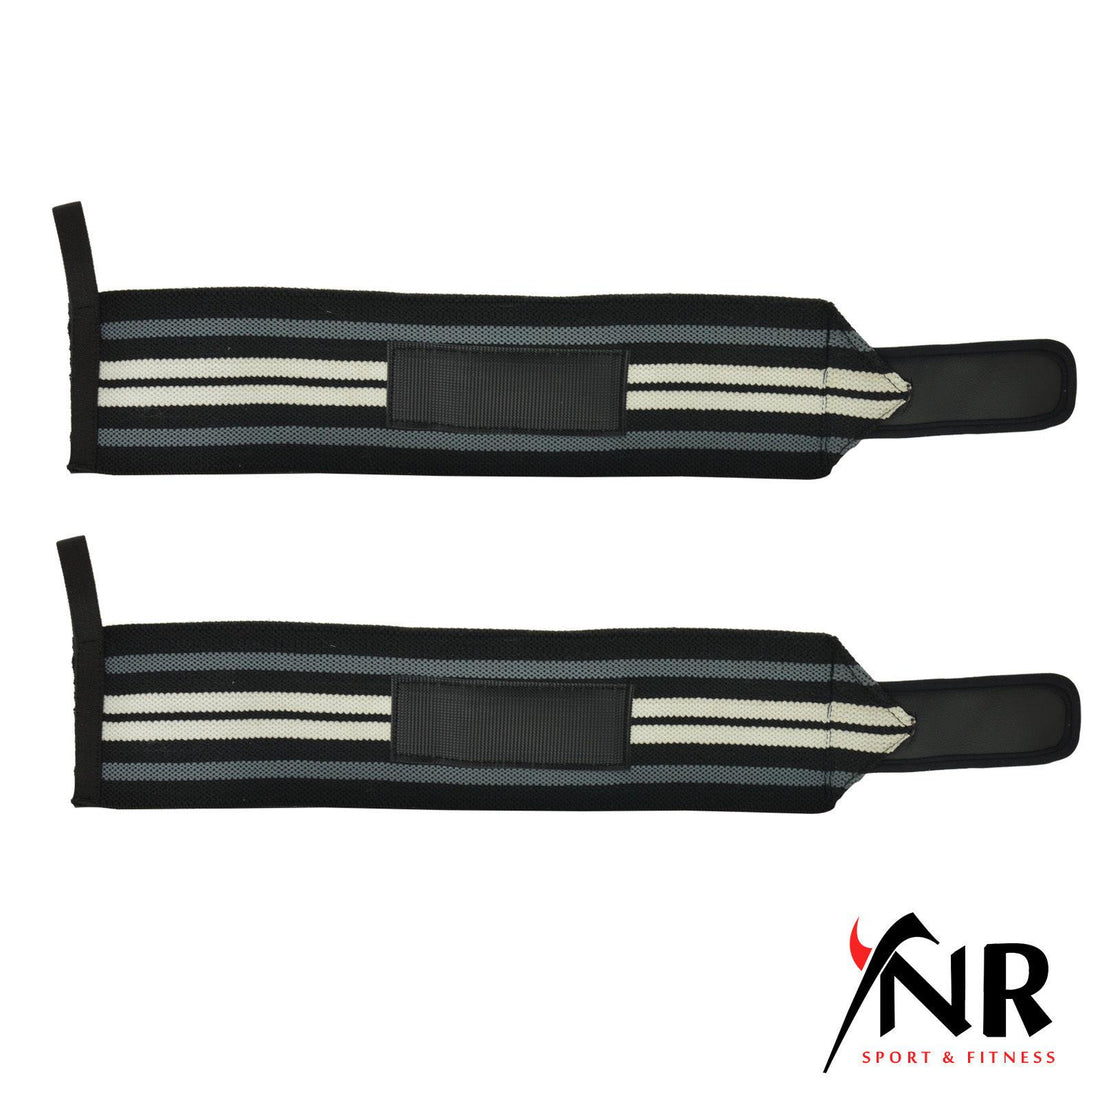 YNR Elasticated Hand Wrist Support Compression Brace Bandage Adjustable Strap